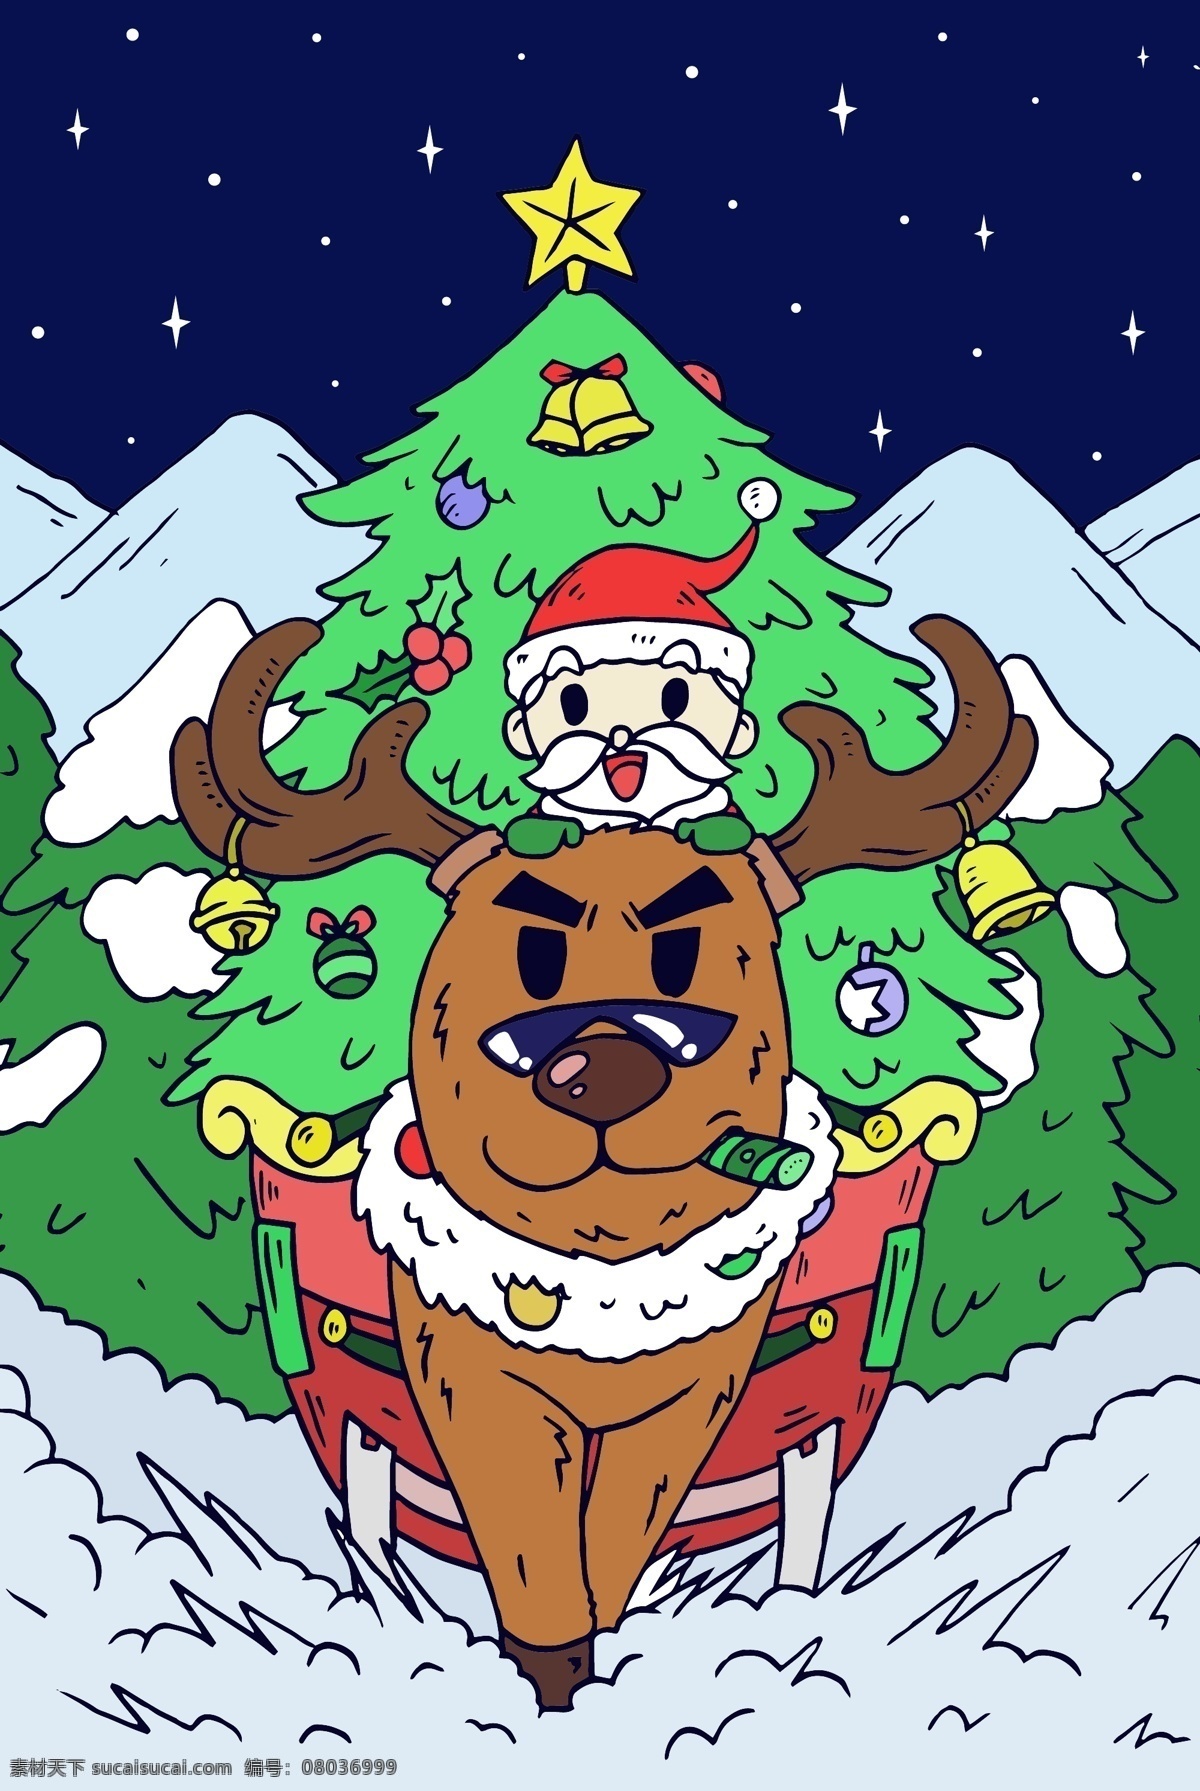 圣诞节 圣诞树 雪橇 铃铛 驯鹿 彩带 星空 圣诞老人 眼镜 雪地 雪茄 行驶 前进 愉快